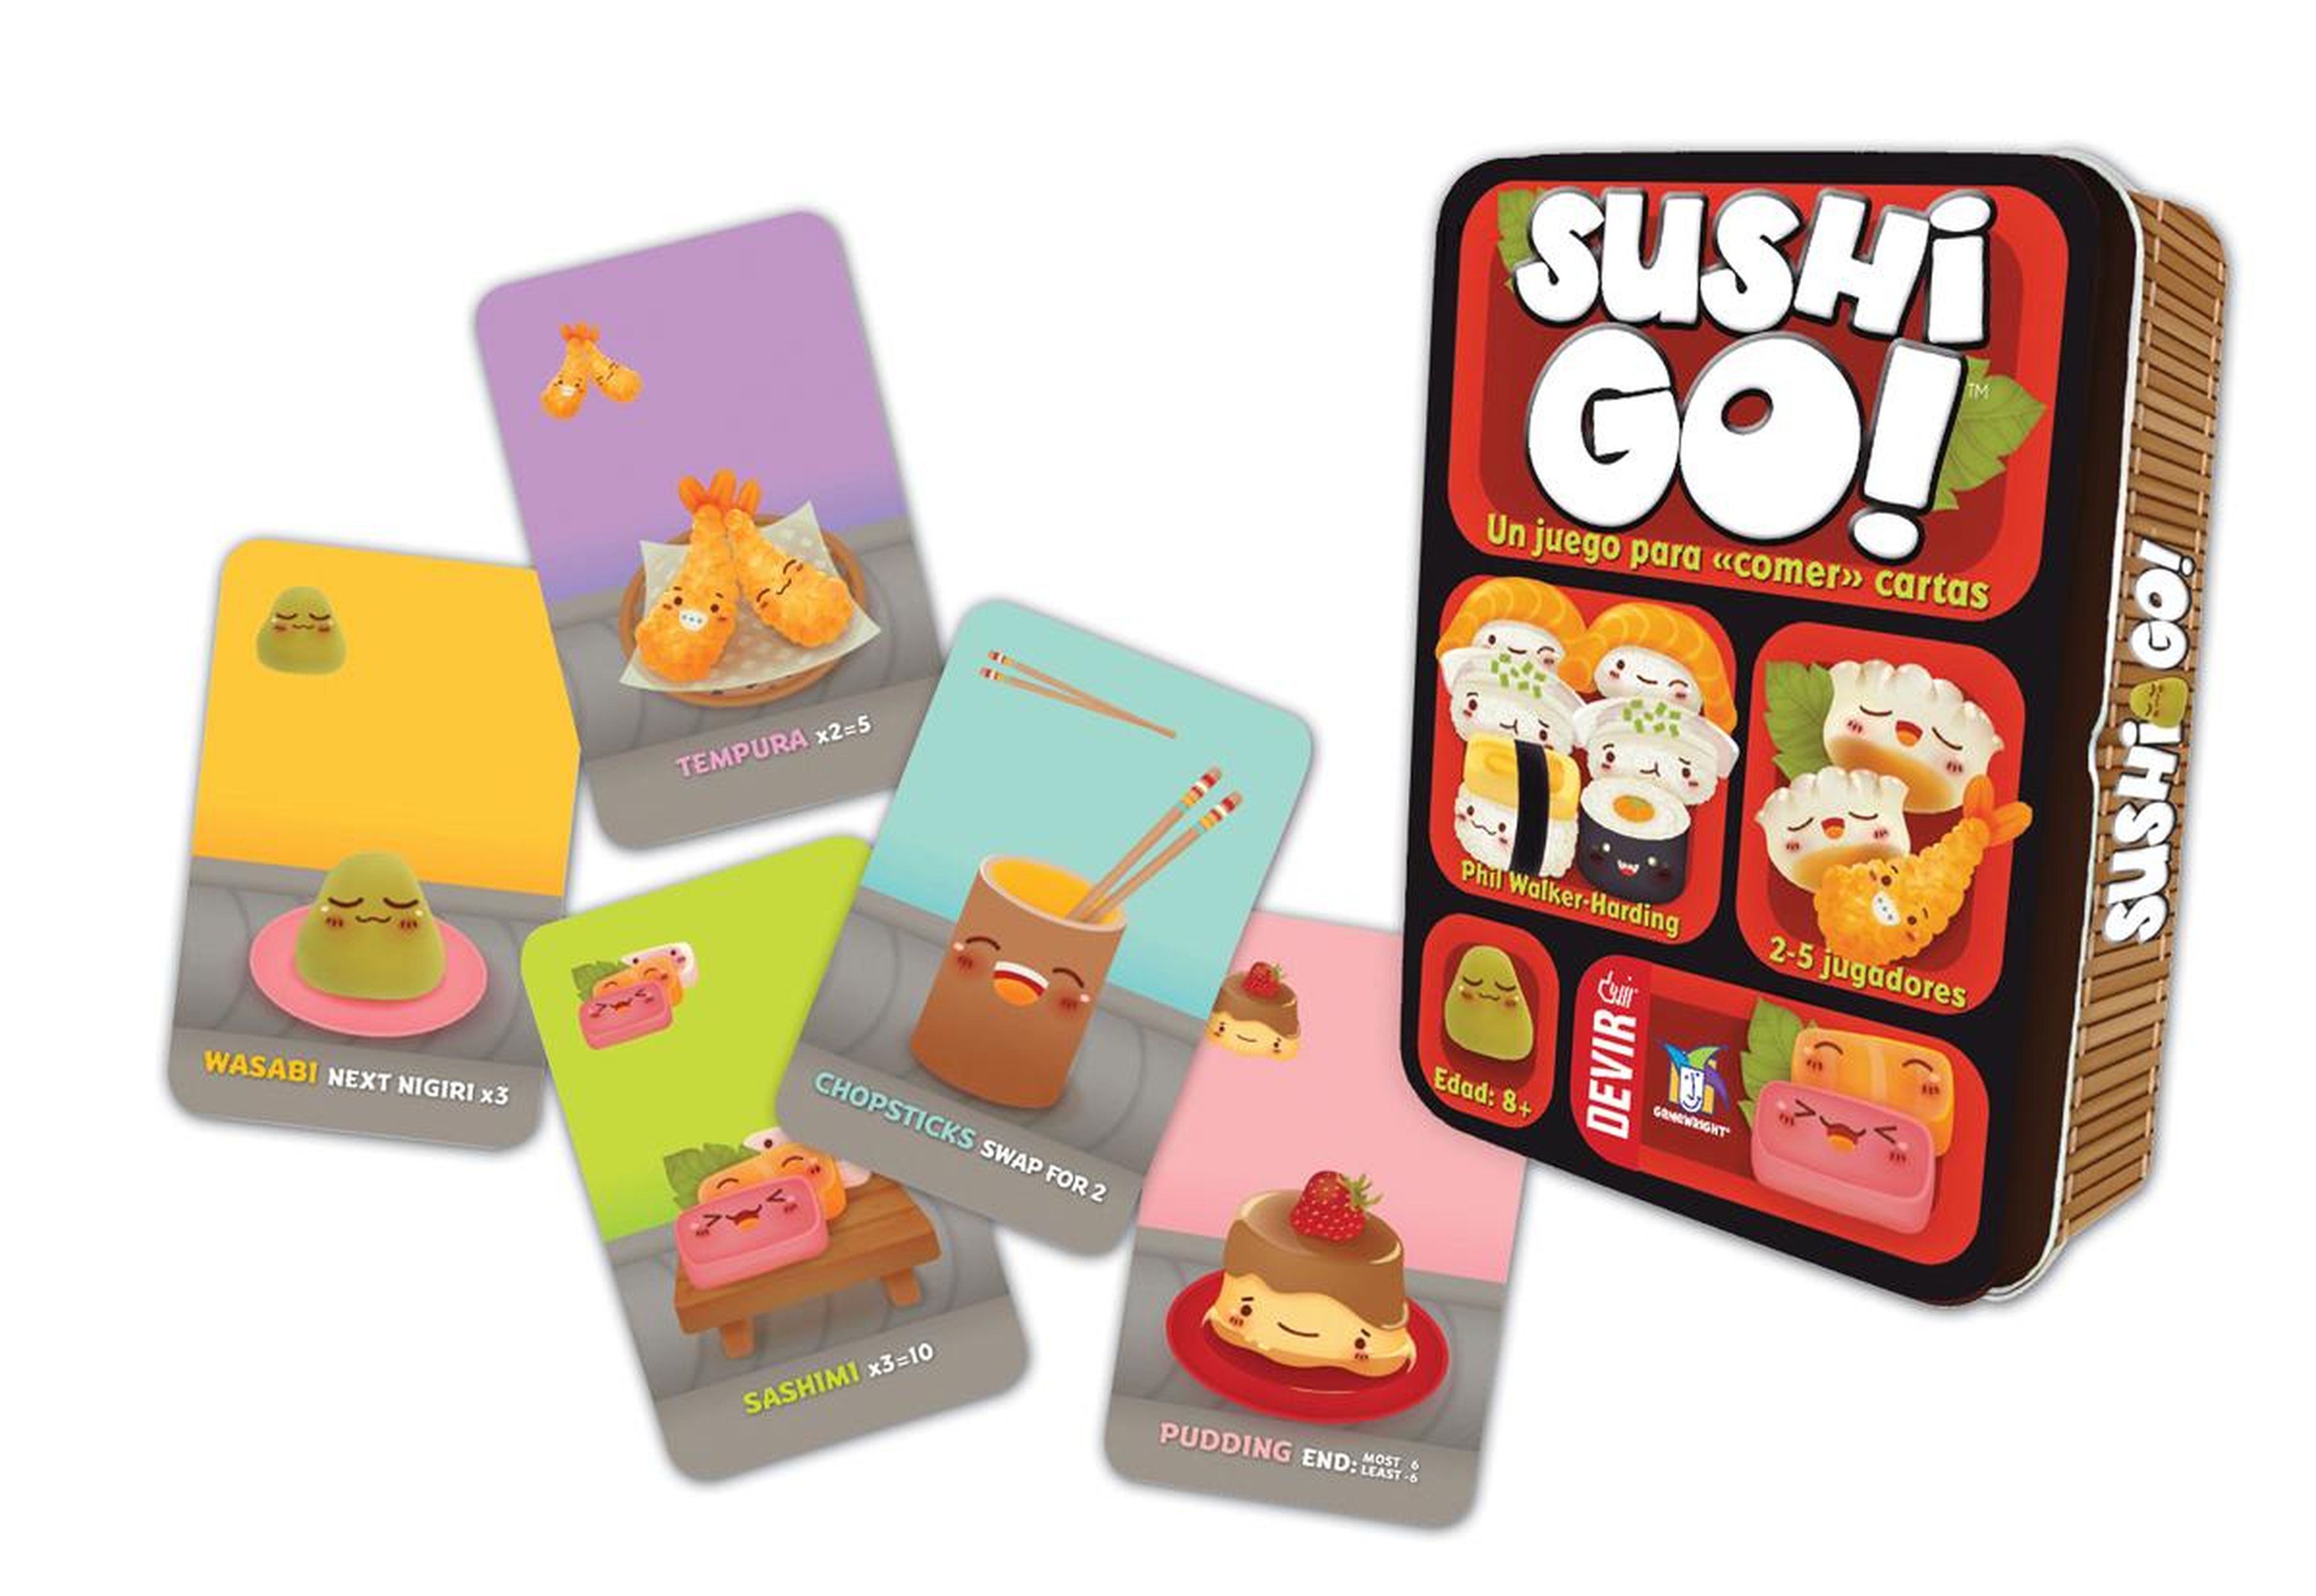 4. Sushi-Go